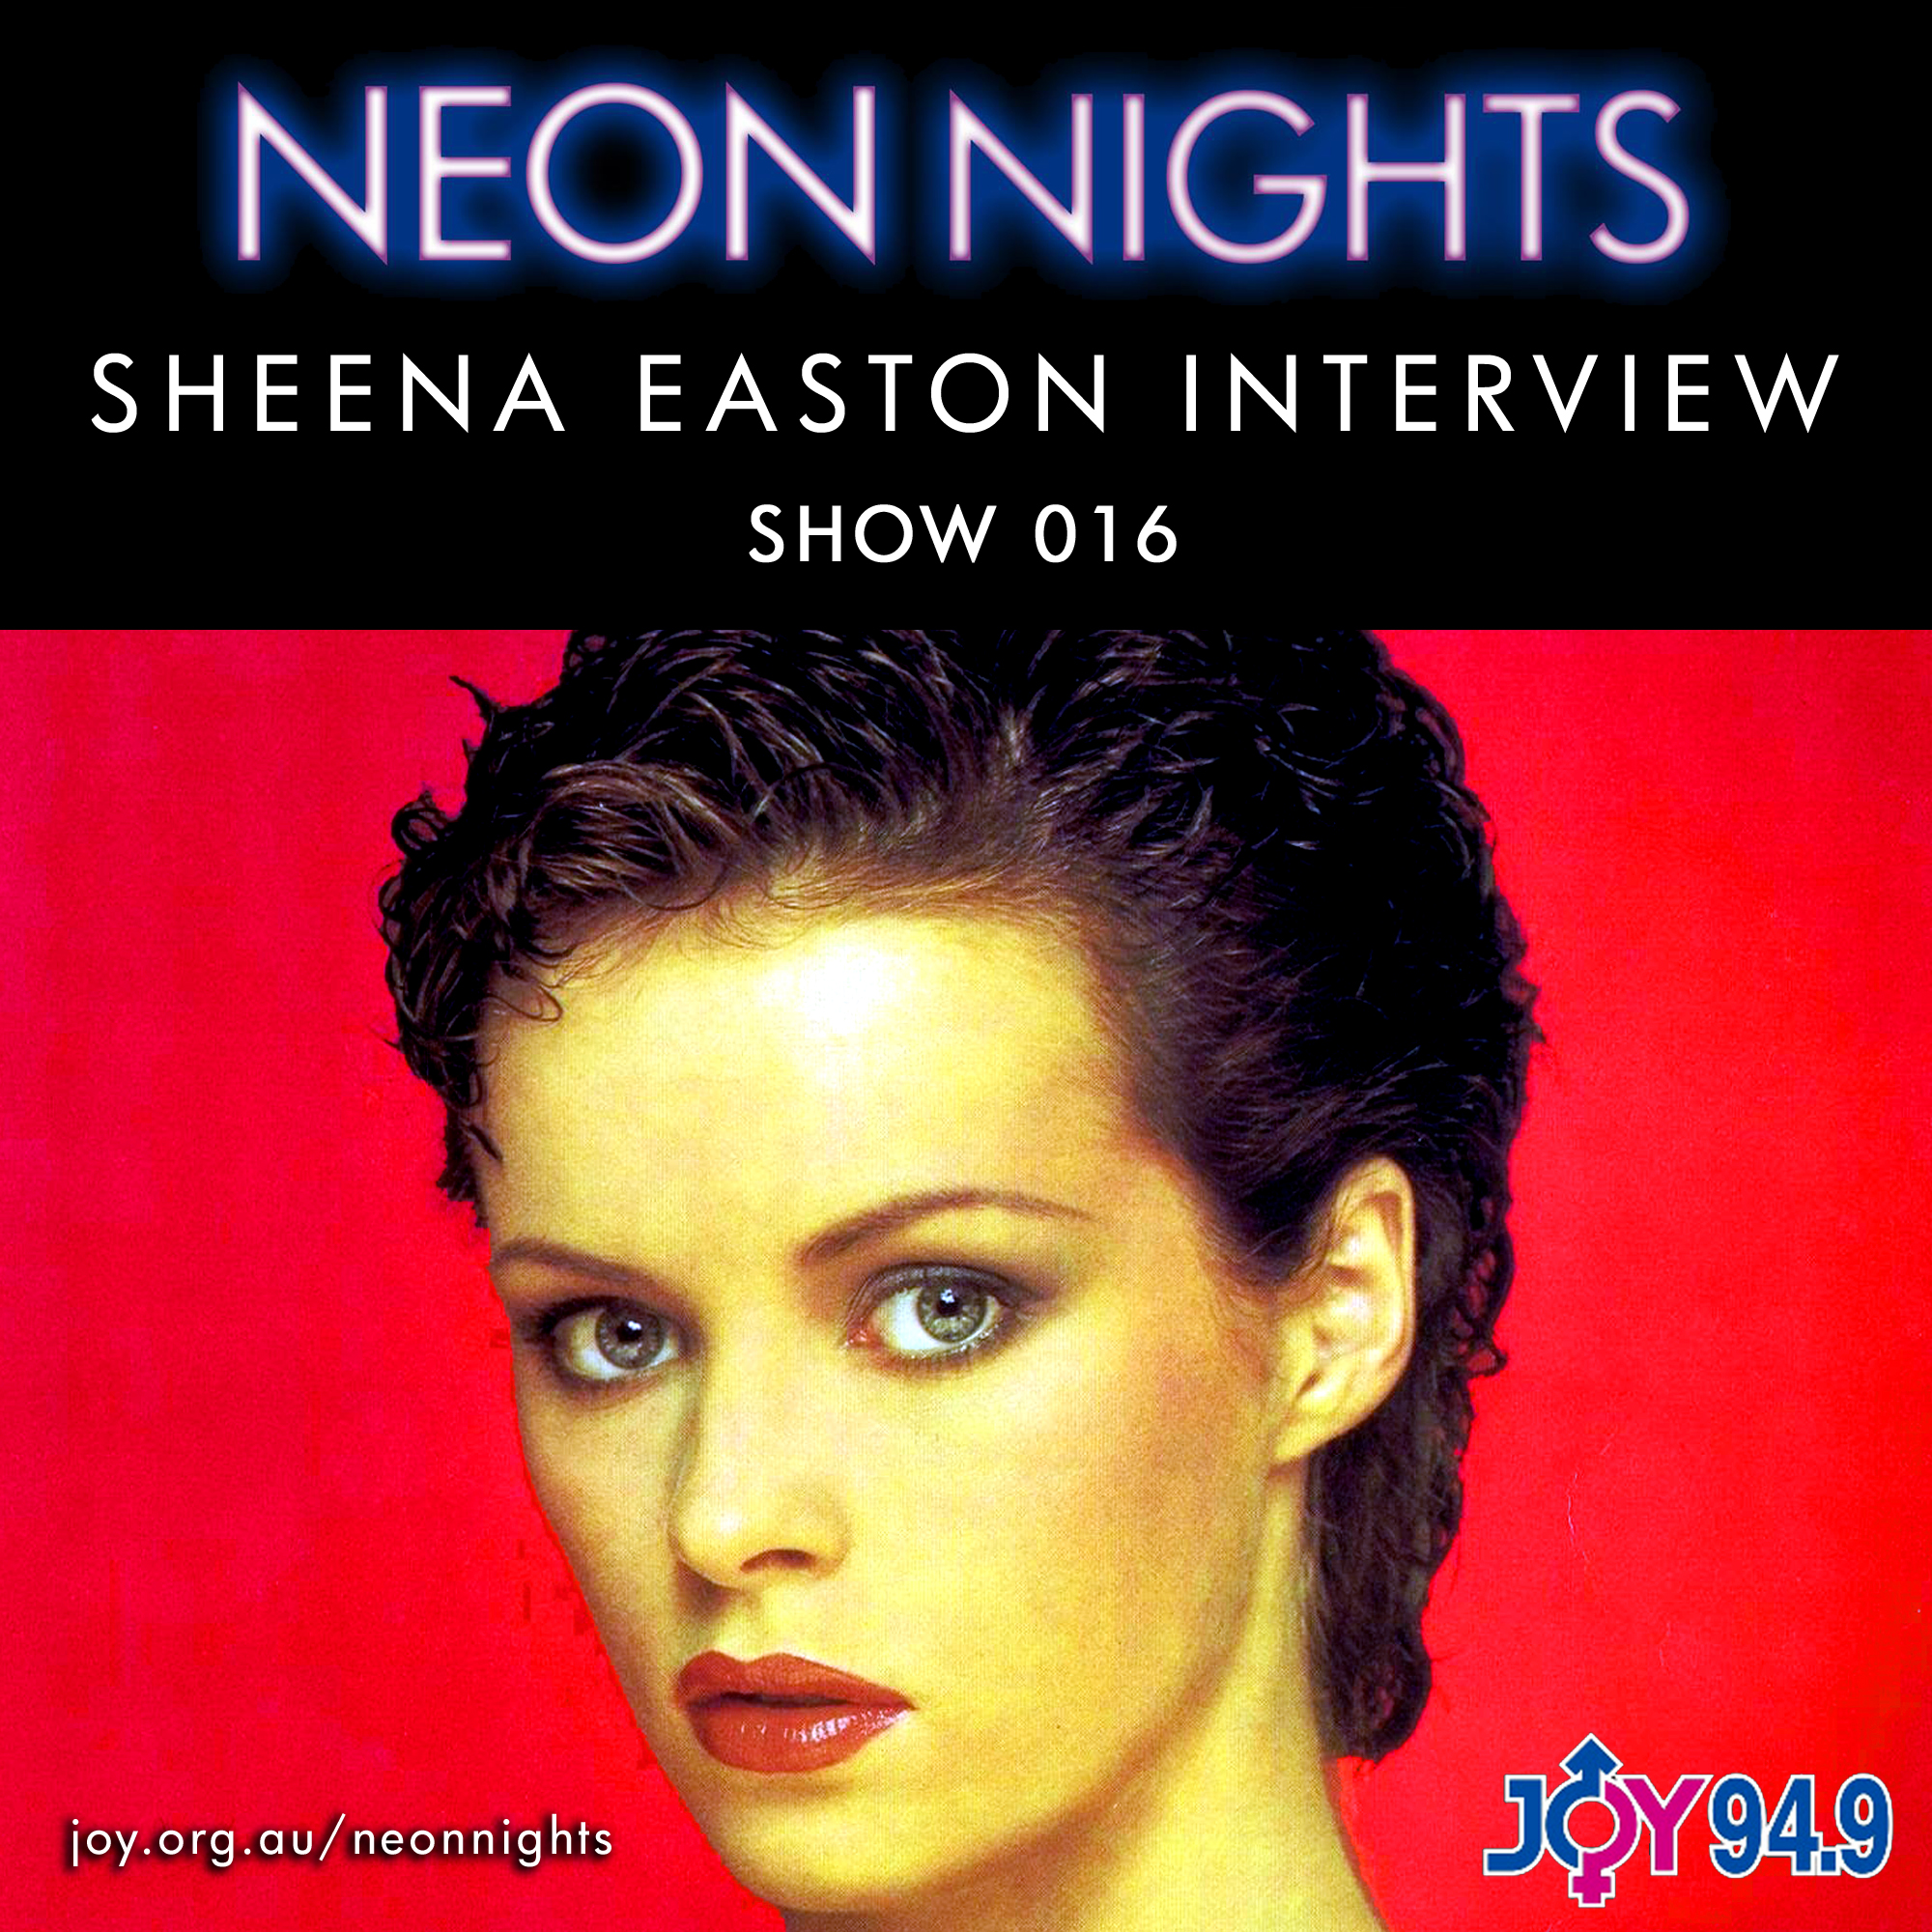 Show 016 / Sheena Easton Interviewed by John von Ahlen